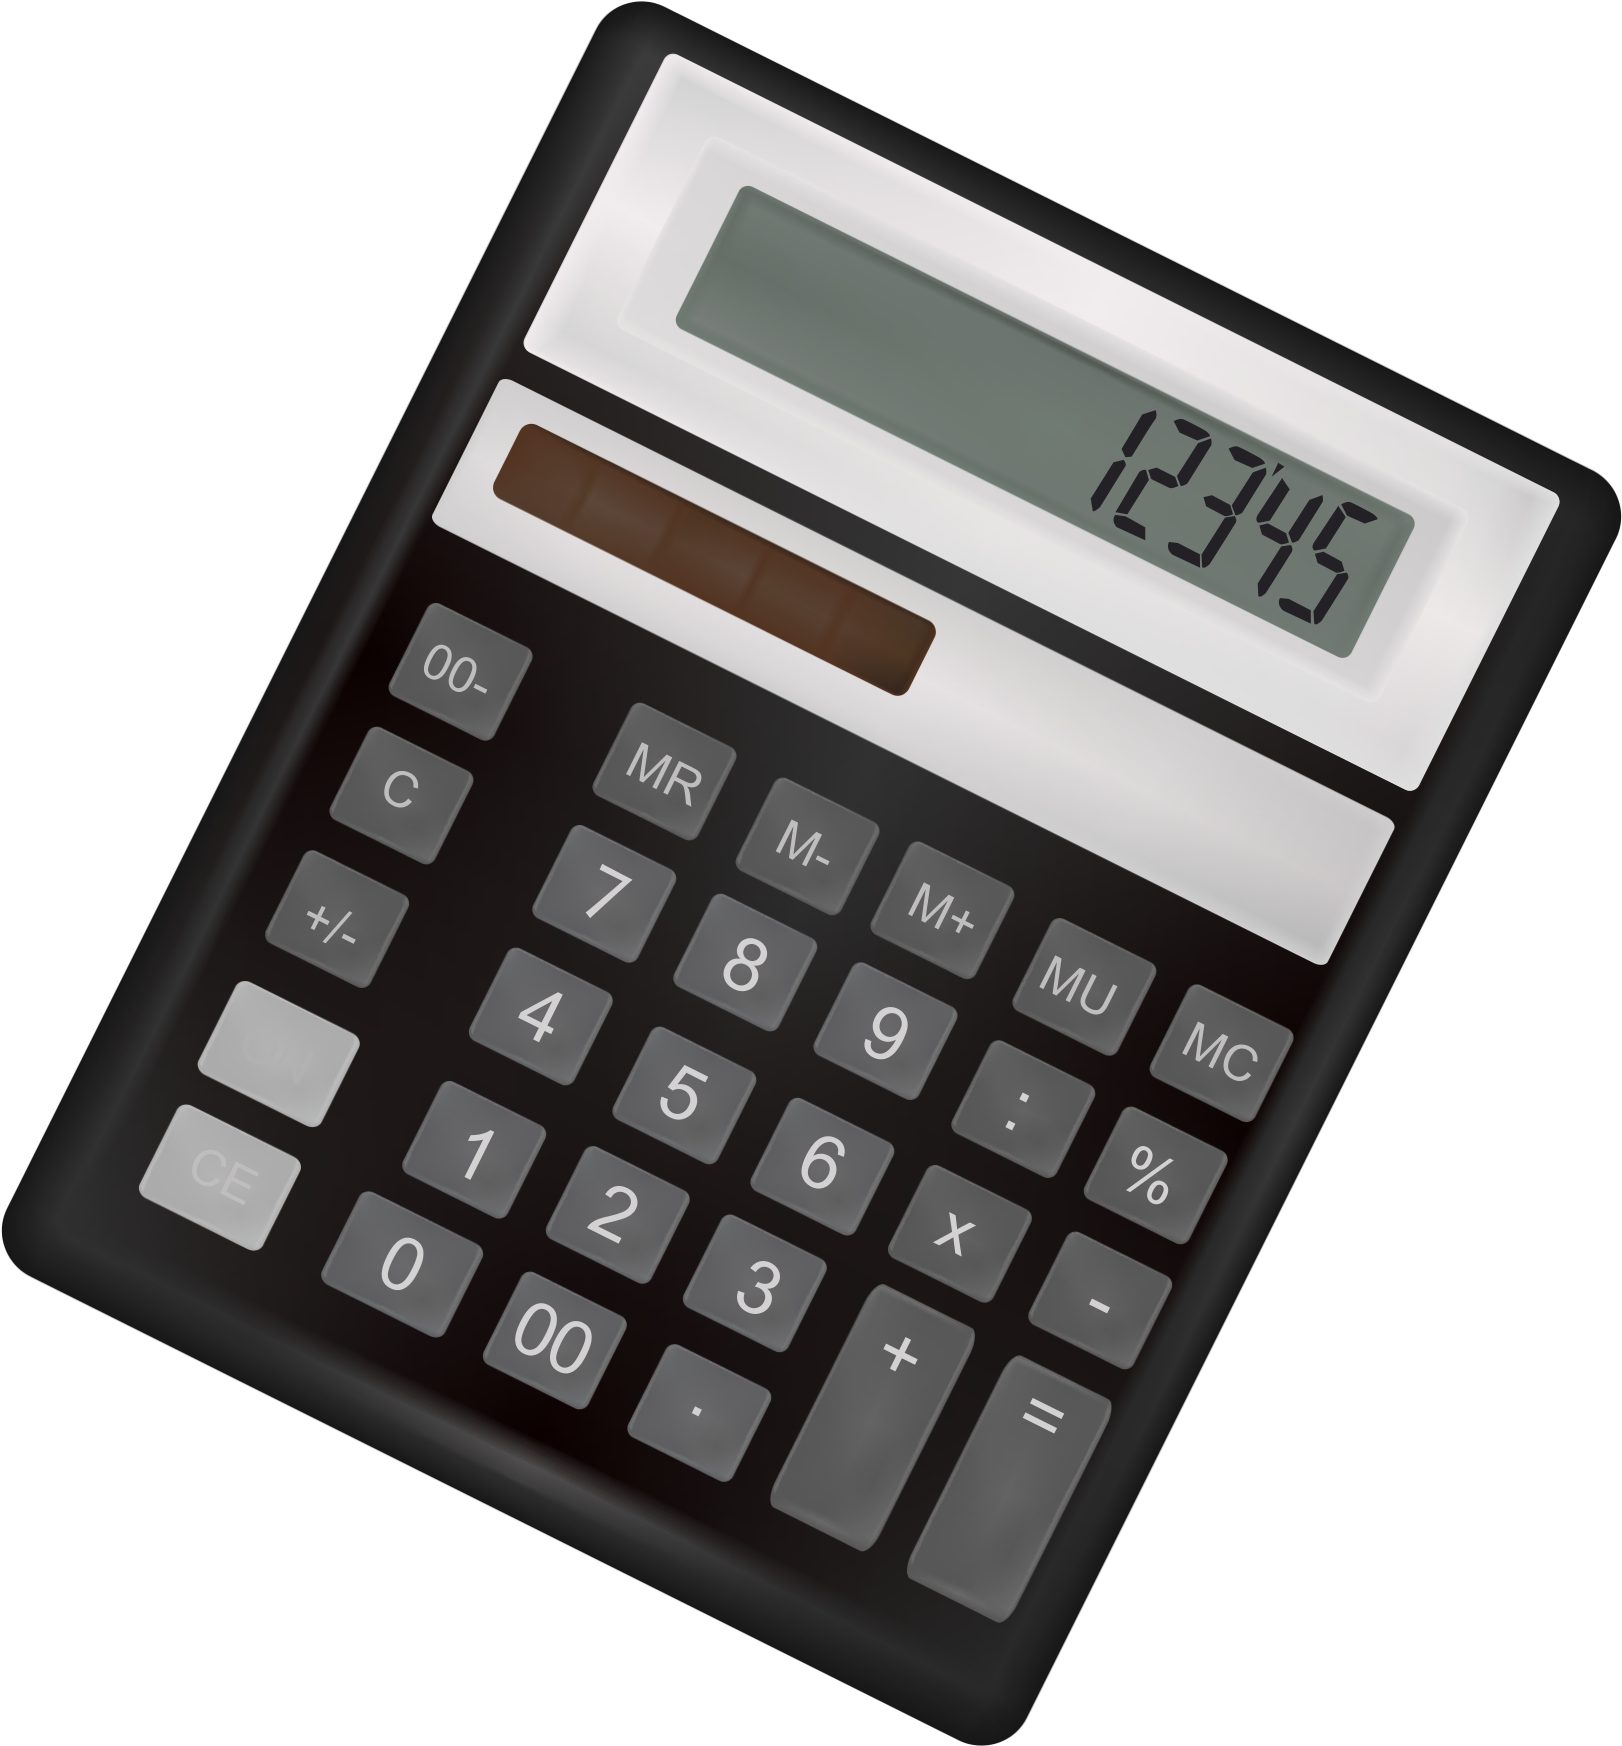 Calculator. Калькулятор на прозрачном фоне. Калькулятор сверху. Изображение калькулятора. Микрокалькулятор.